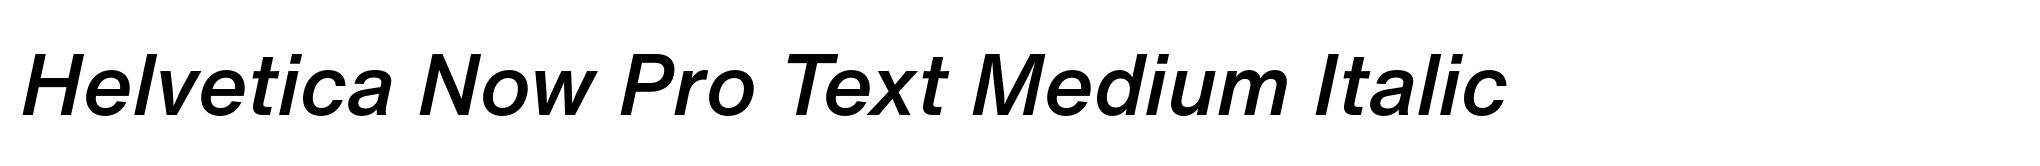 Helvetica Now Pro Text Medium Italic image